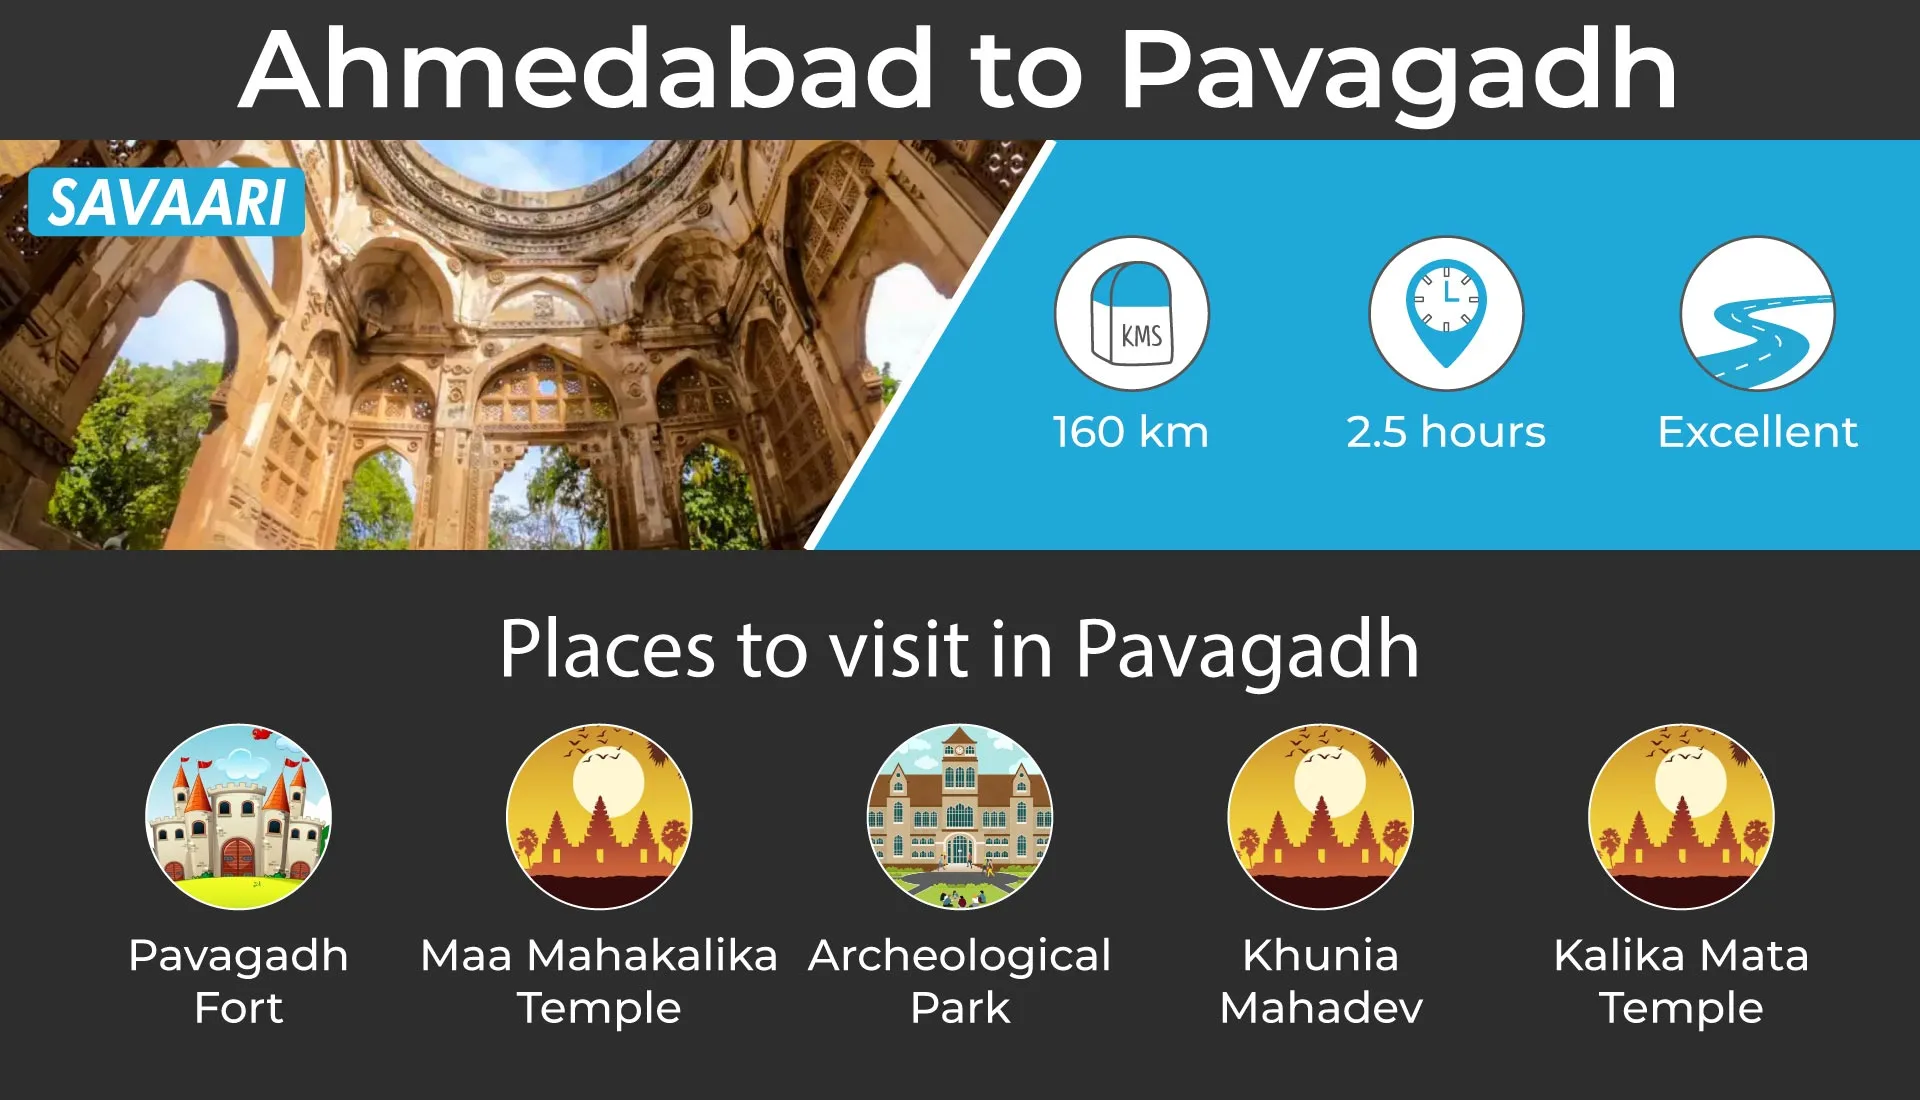 Ahmedabad to pavagadh road trip